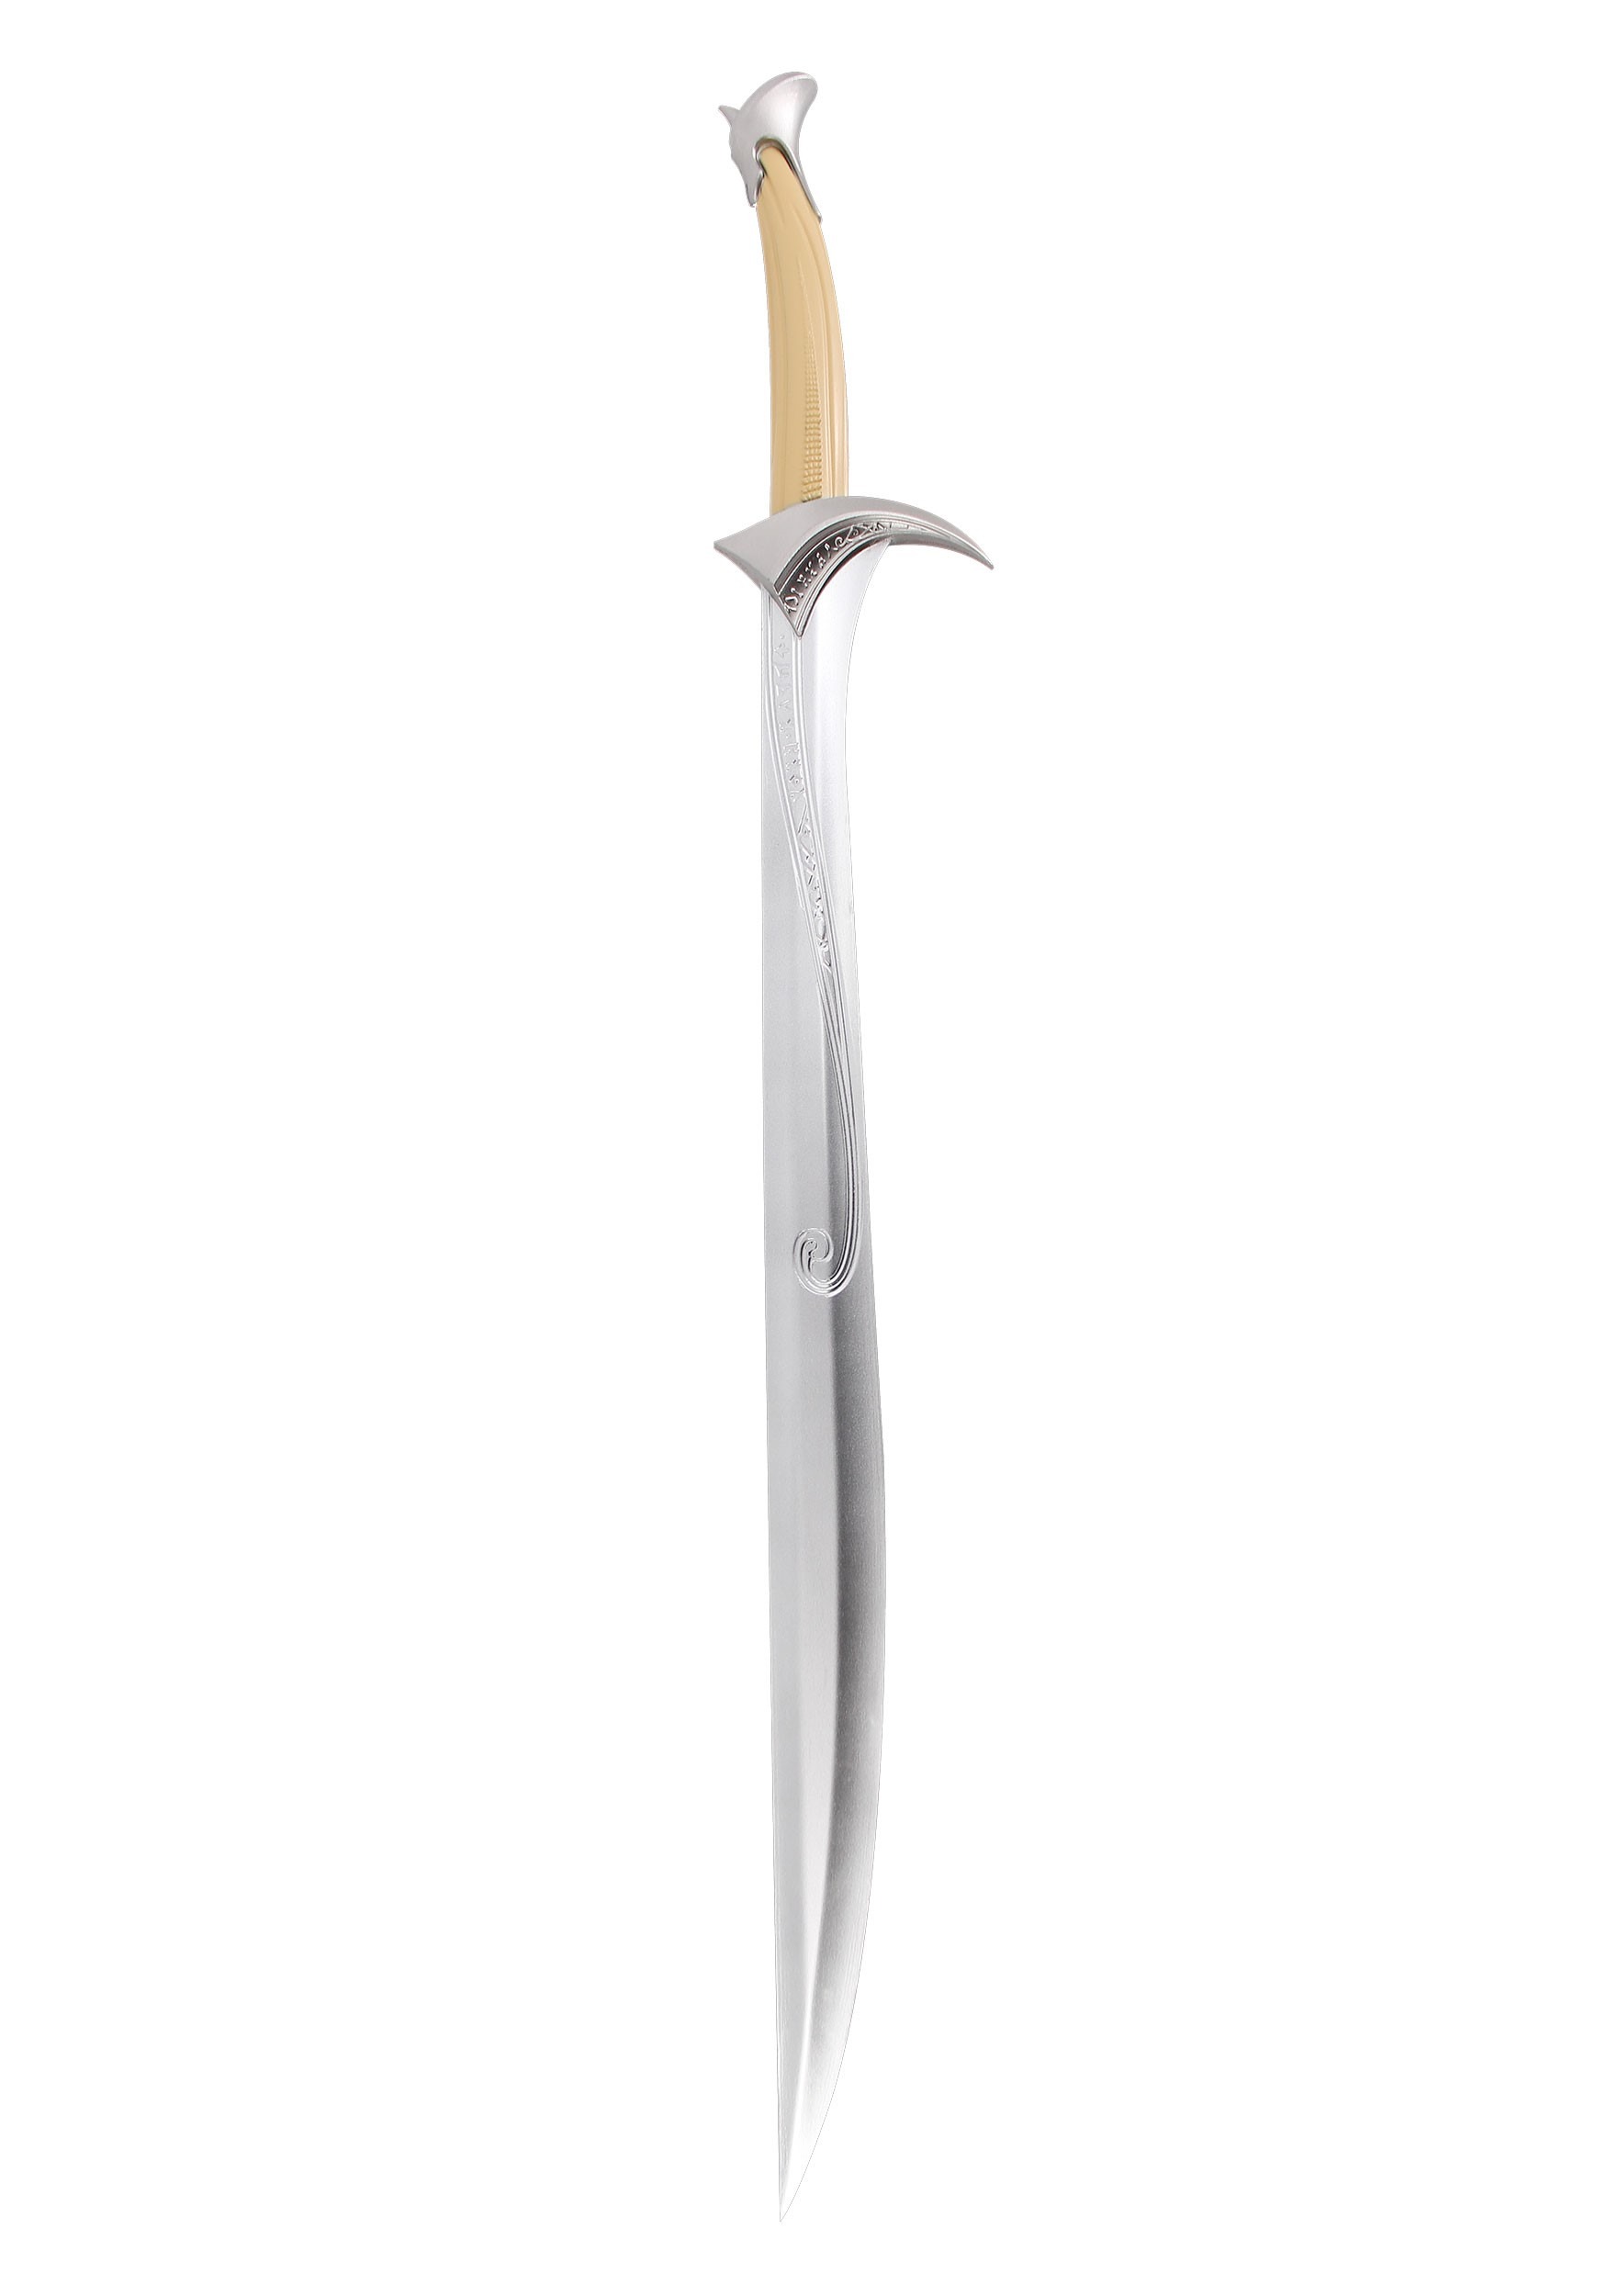 Elven Sword Prop